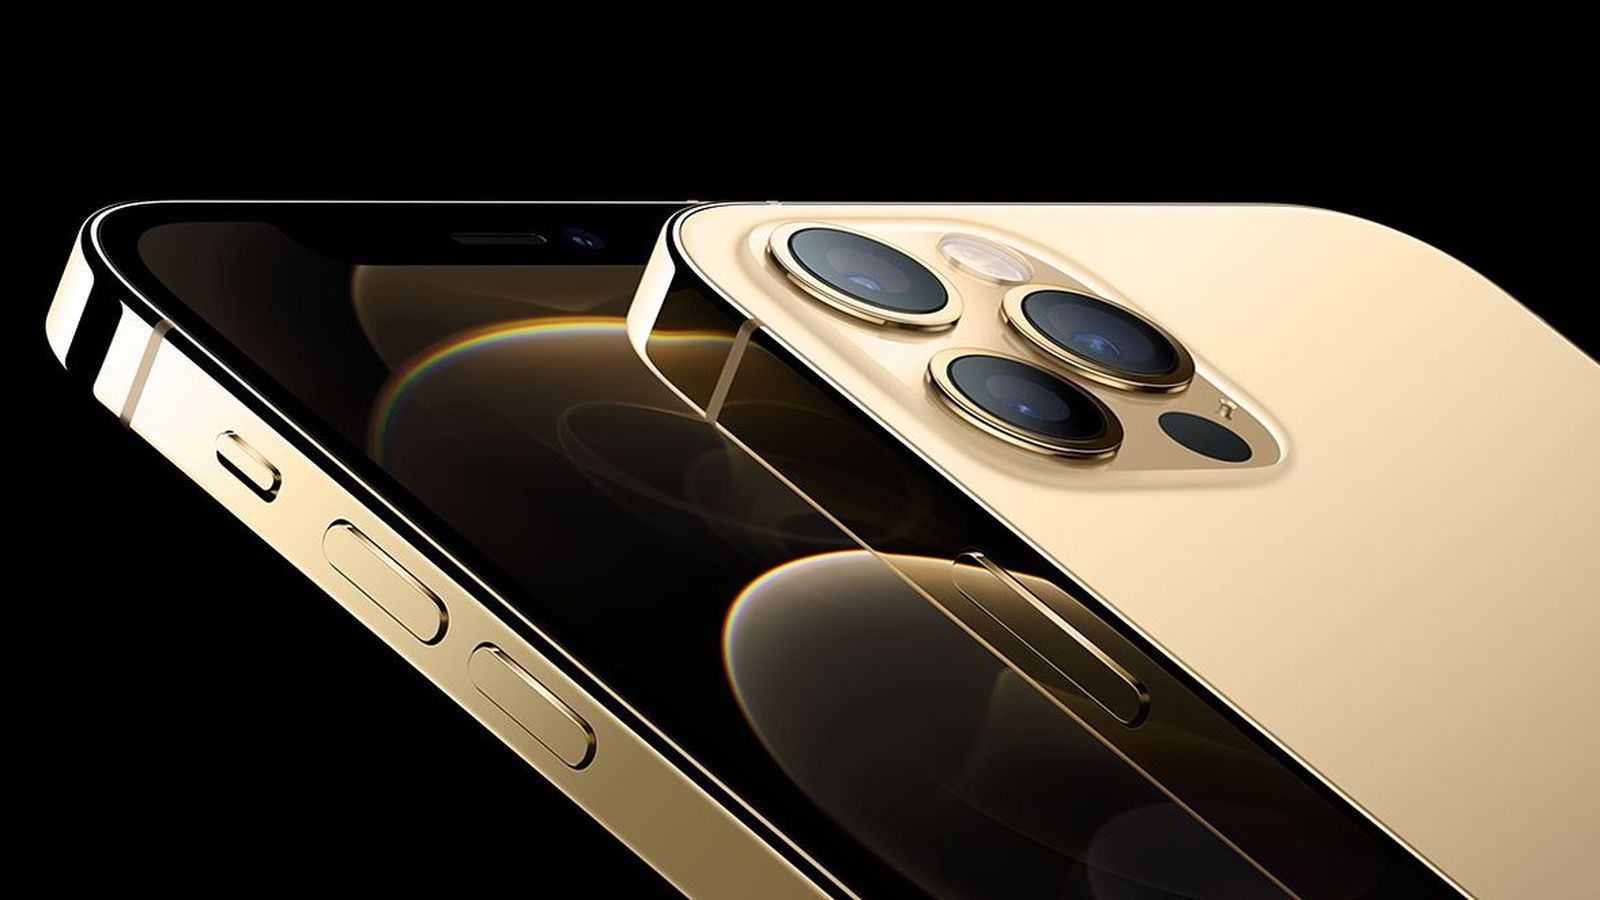 Với tính năng nhận diện vân tay chính xác và tiện lợi, Gold Version iPhone 12 Pro Fingerprint đem lại trải nghiệm tuyệt vời và bảo vệ thông tin cá nhân an toàn. Hãy thưởng thức hình ảnh sản phẩm này để khám phá thêm về tính năng độc đáo này nhé!